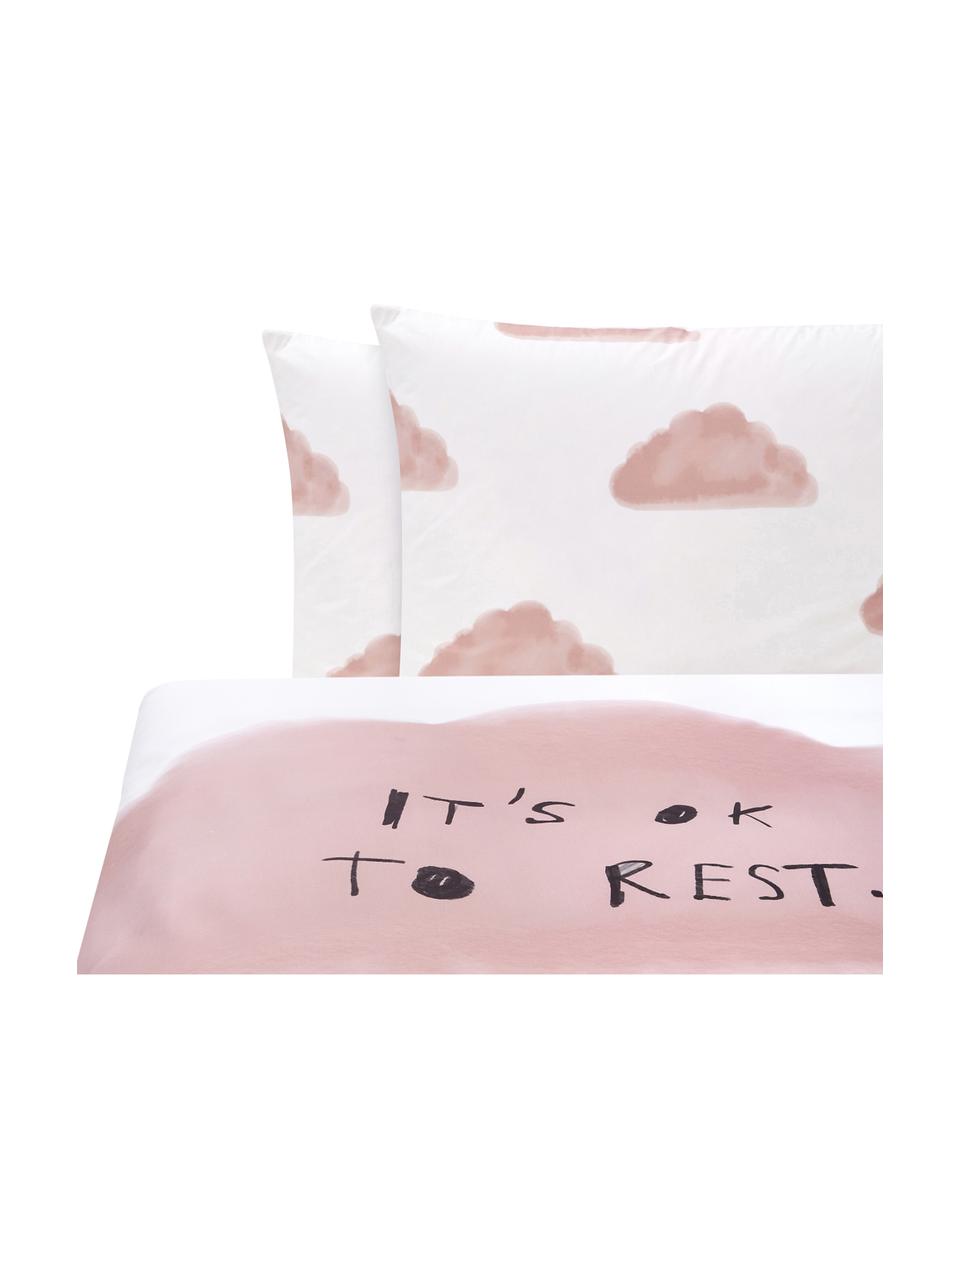 Designové perkálové povlečení Rest od Kery Till, Růžová, bílá, černá